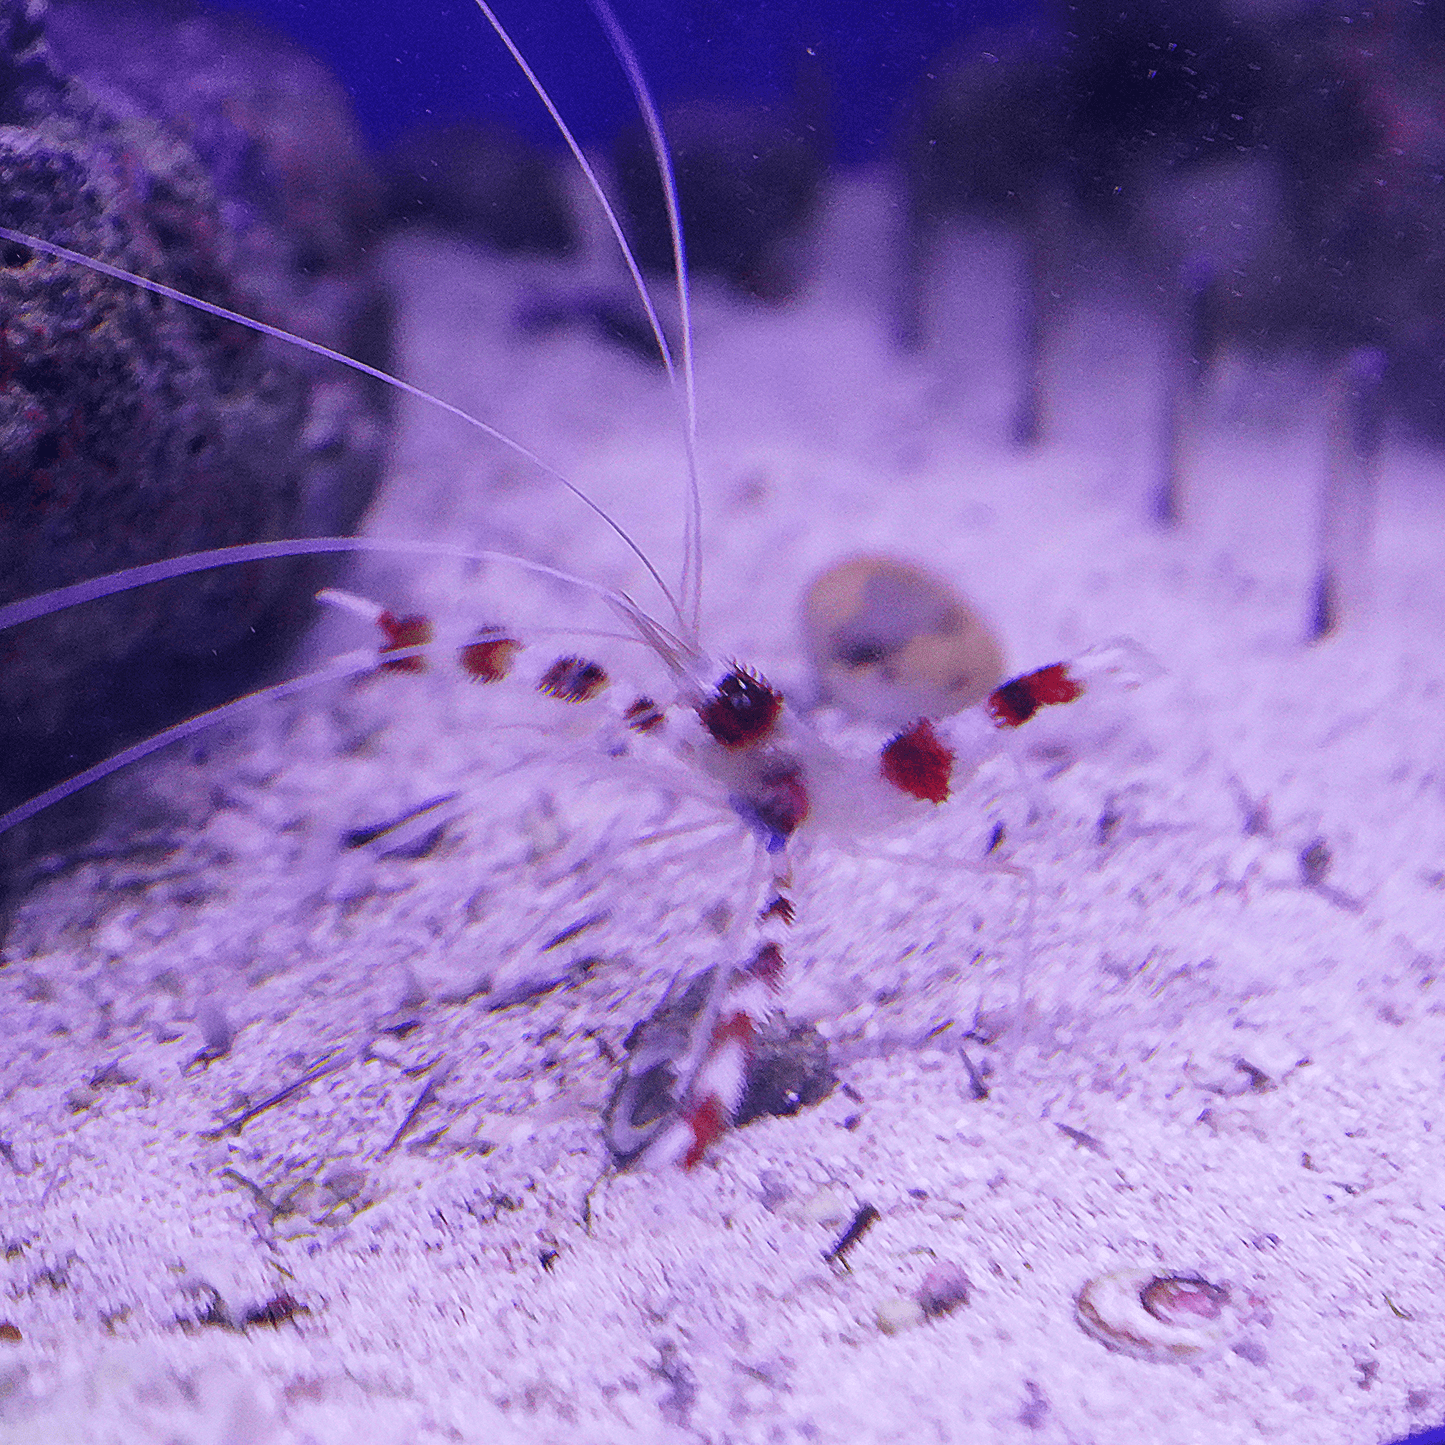 Coral Banded Shrimp - Koral King